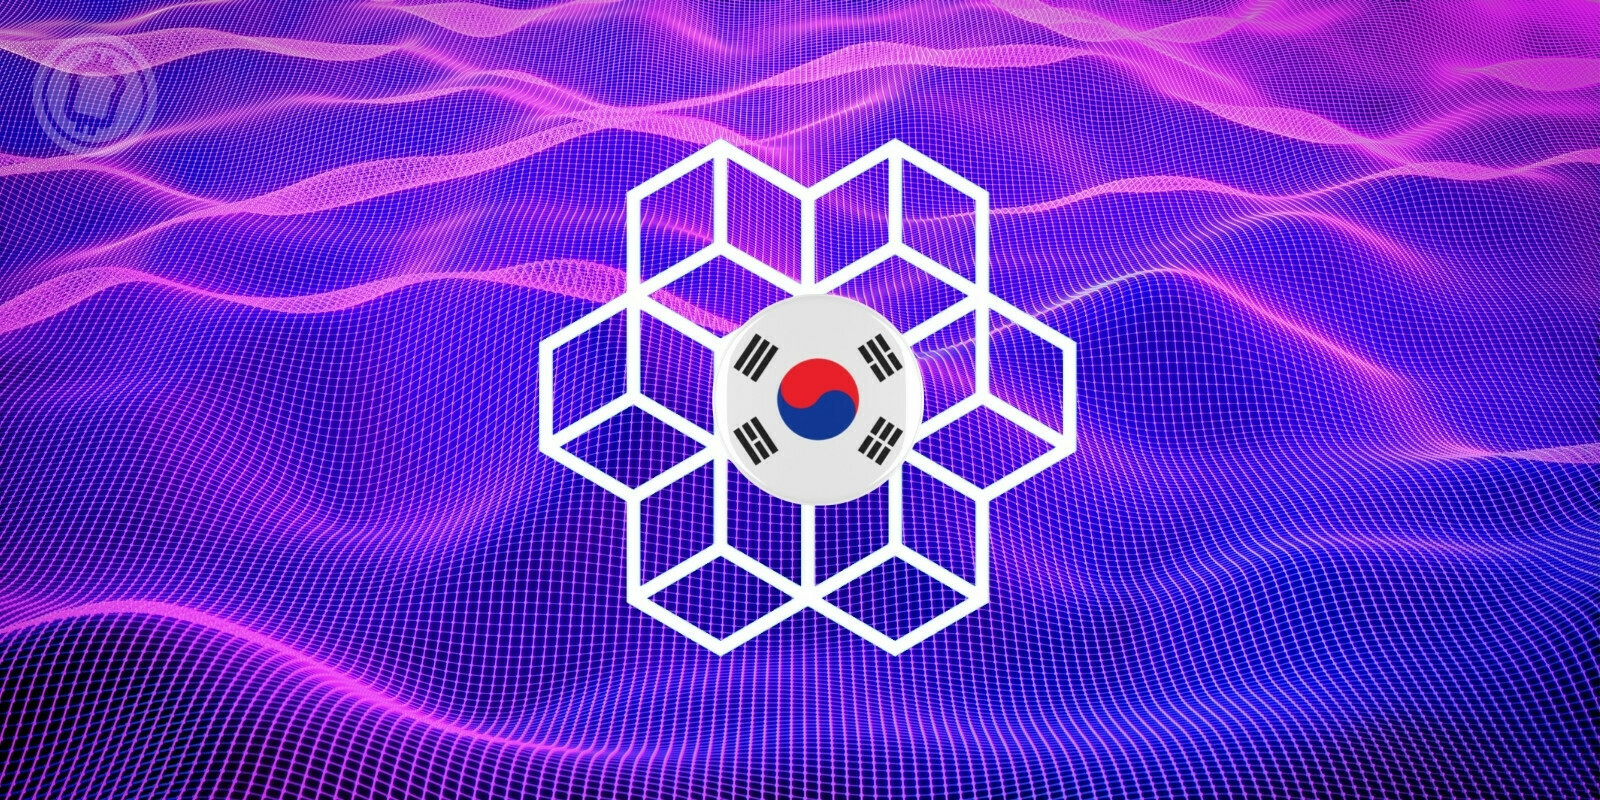 Corée du Sud : 185 millions de dollars débloqués pour développer le metaverse